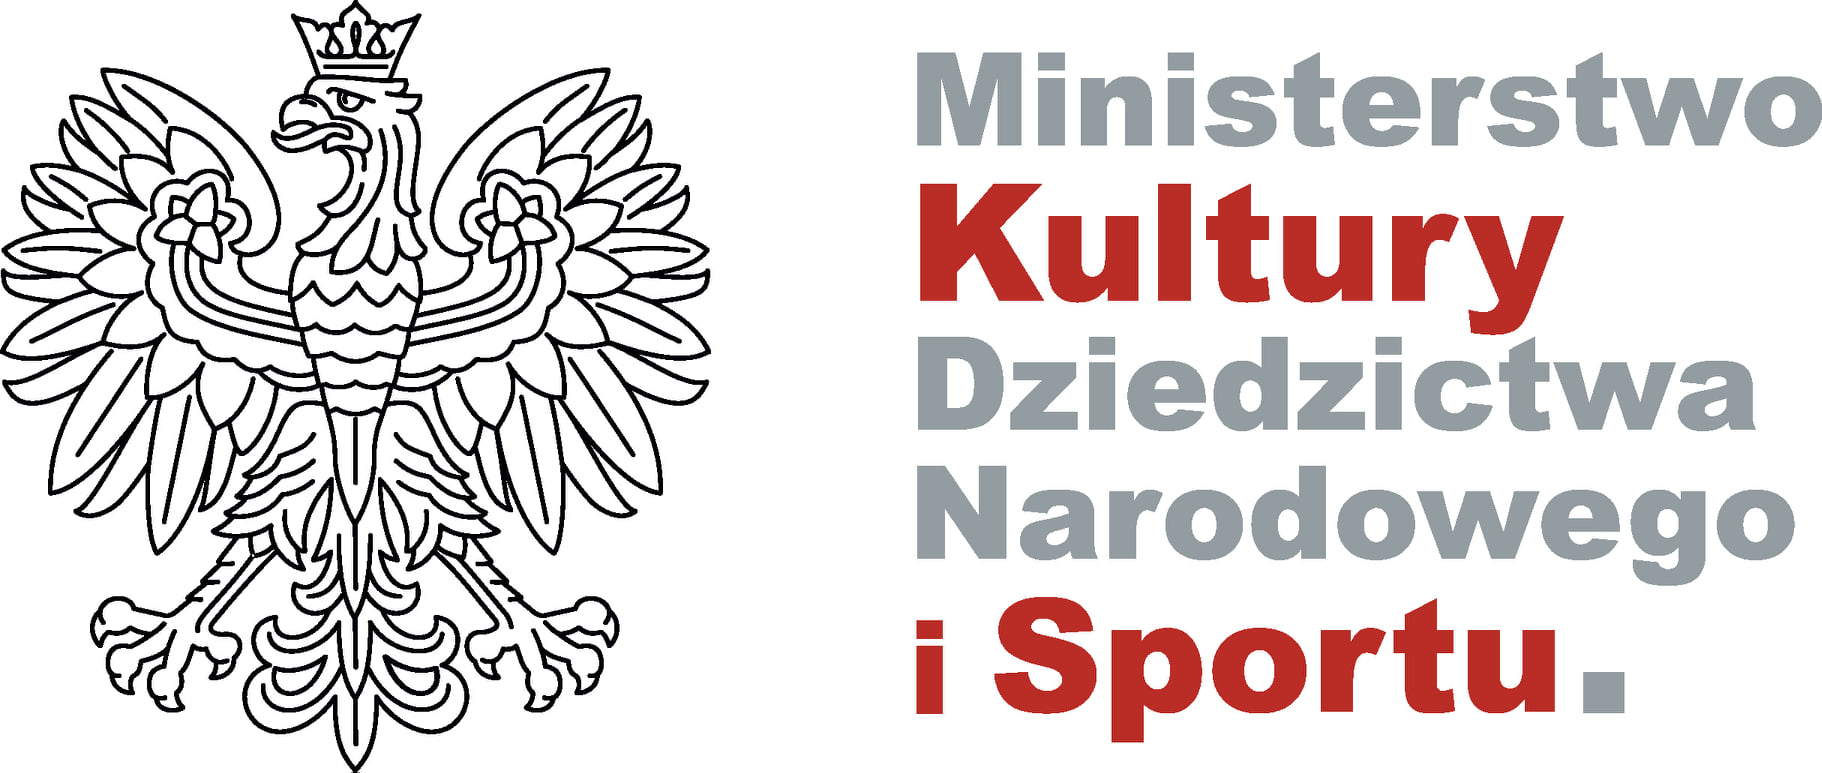 Ministerstwo Kultury Dziedzictwa Narodowego i Sportu sponsorem naszego KS STAL LA w Ostrowie Wlkp